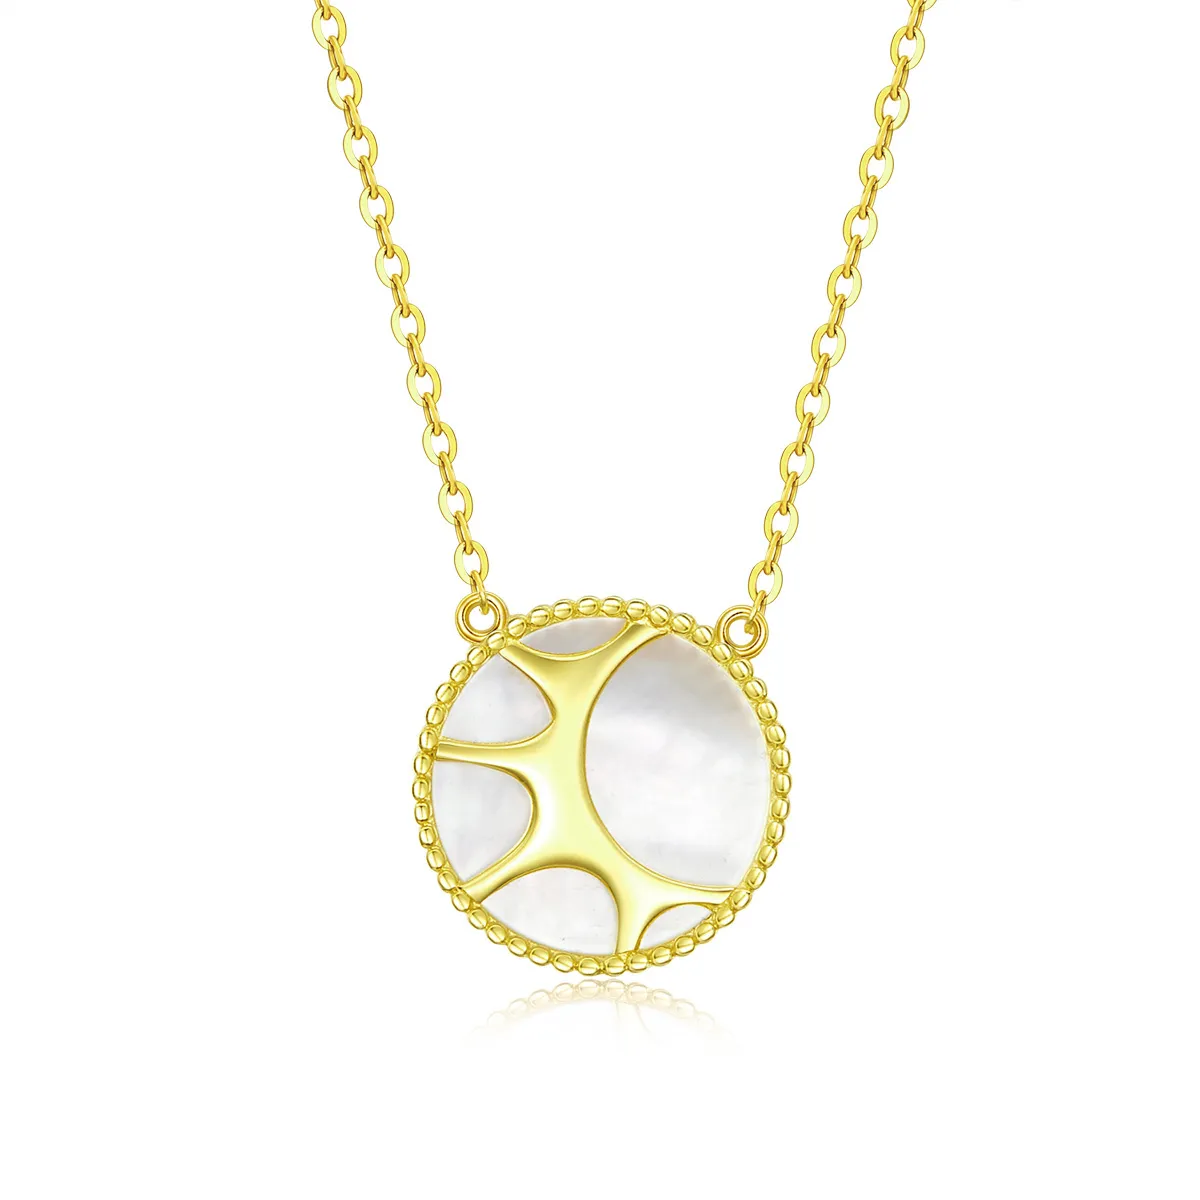 Pandora Style Little Sun Necklace - BSN070